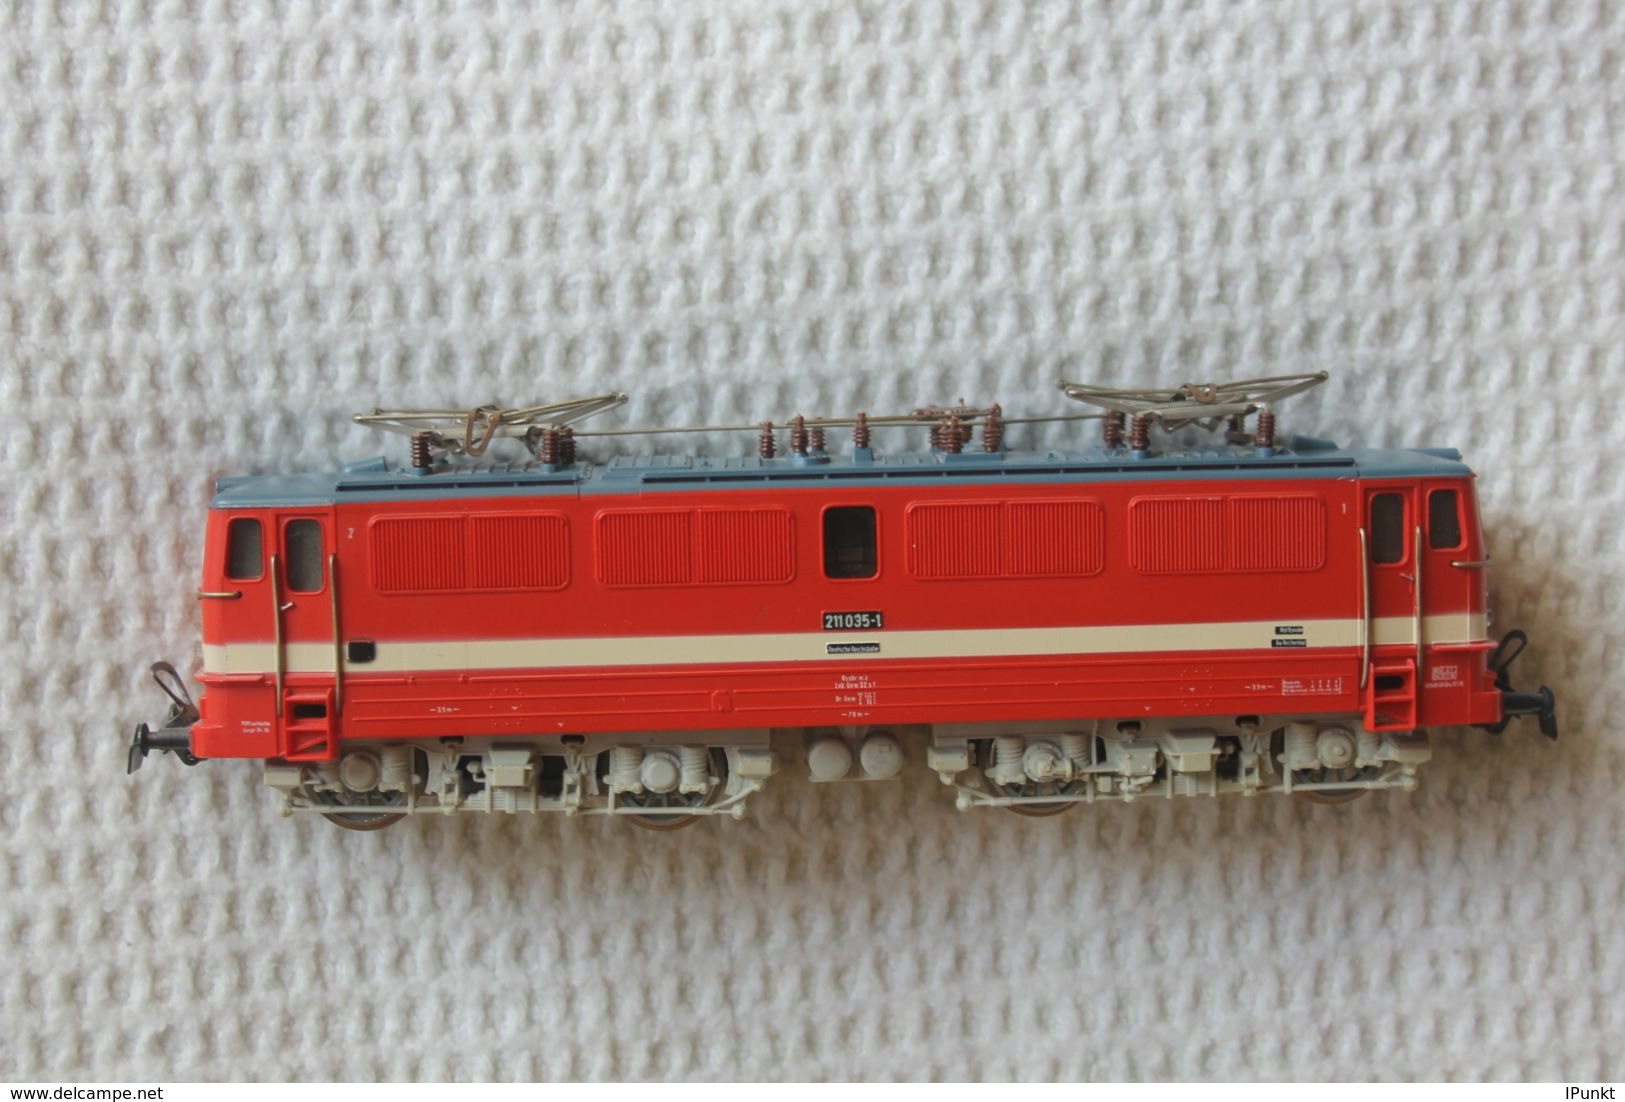 Schnellzuglokomotive Der Deutsche Reichsbahn; Baureihe BR 211 / E 11; PIKO; Epoche IV; Neu In OVP - Locomotieven